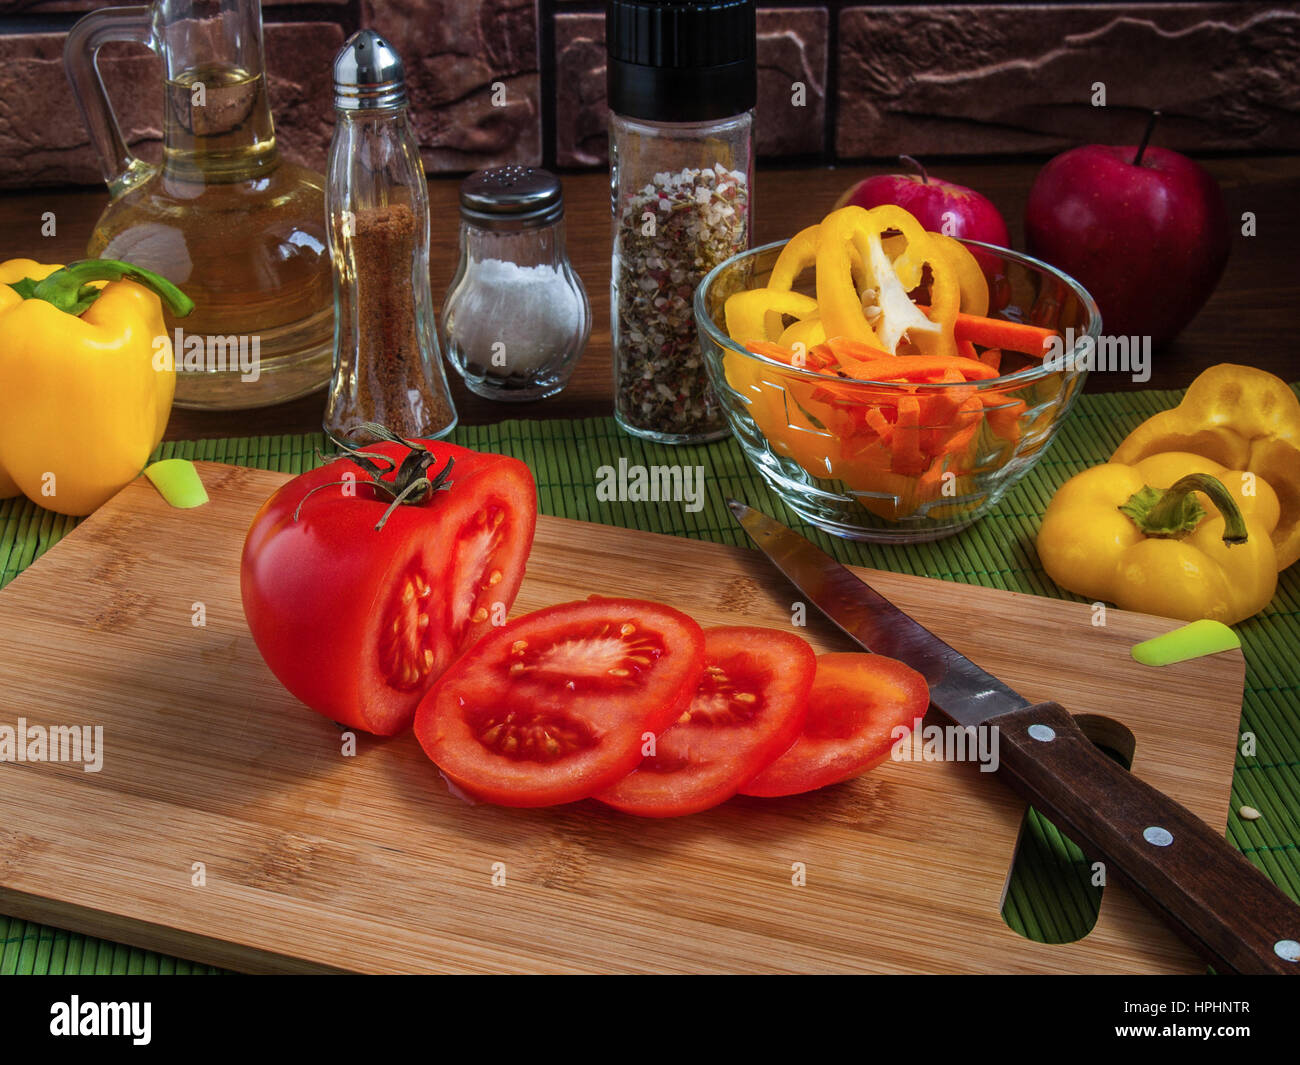 Große gelbe saftige Scheiben Paprika Ringe auf einem Holzbrett auf einem Küchentisch mit Karotten, rote Tomaten, Äpfel, Pflanzenöl, Salz, Gewürze Stockfoto